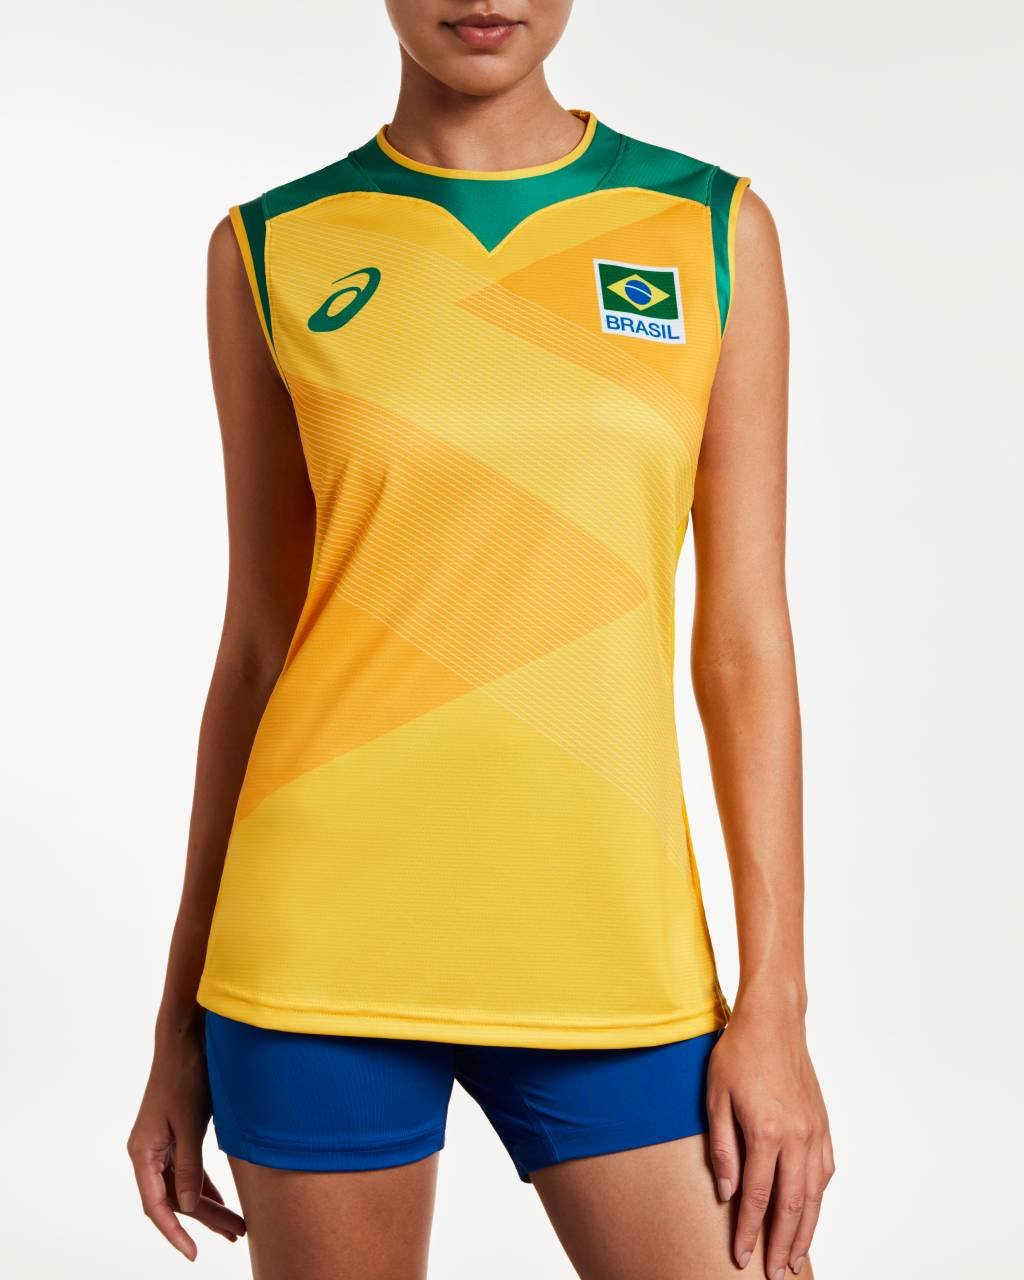 ASICS e CBV apresentam uniformes que vôlei do Brasil vestirá no